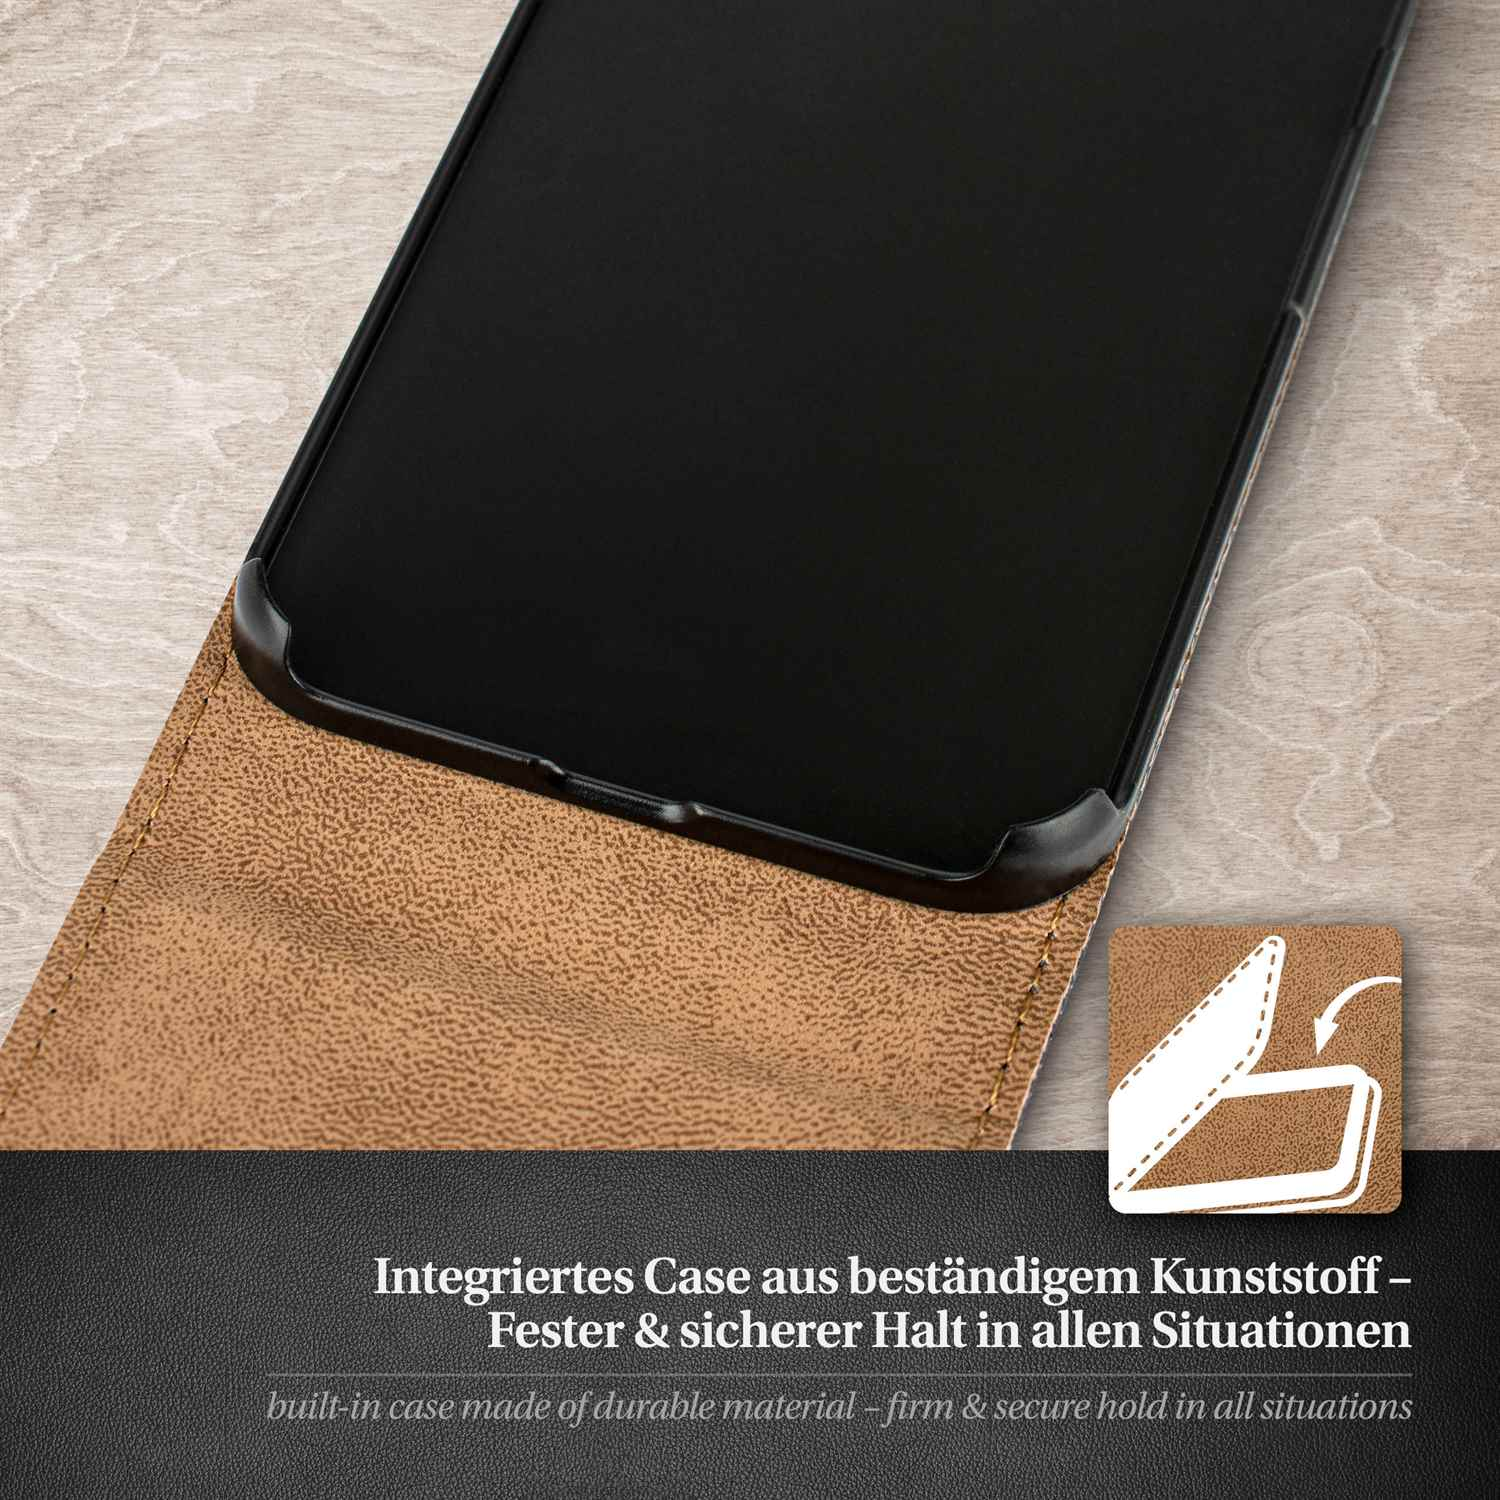 MOEX Flip Case, Flip 6 iPhone Cover, Apple, Plus, Anthracite-Gray